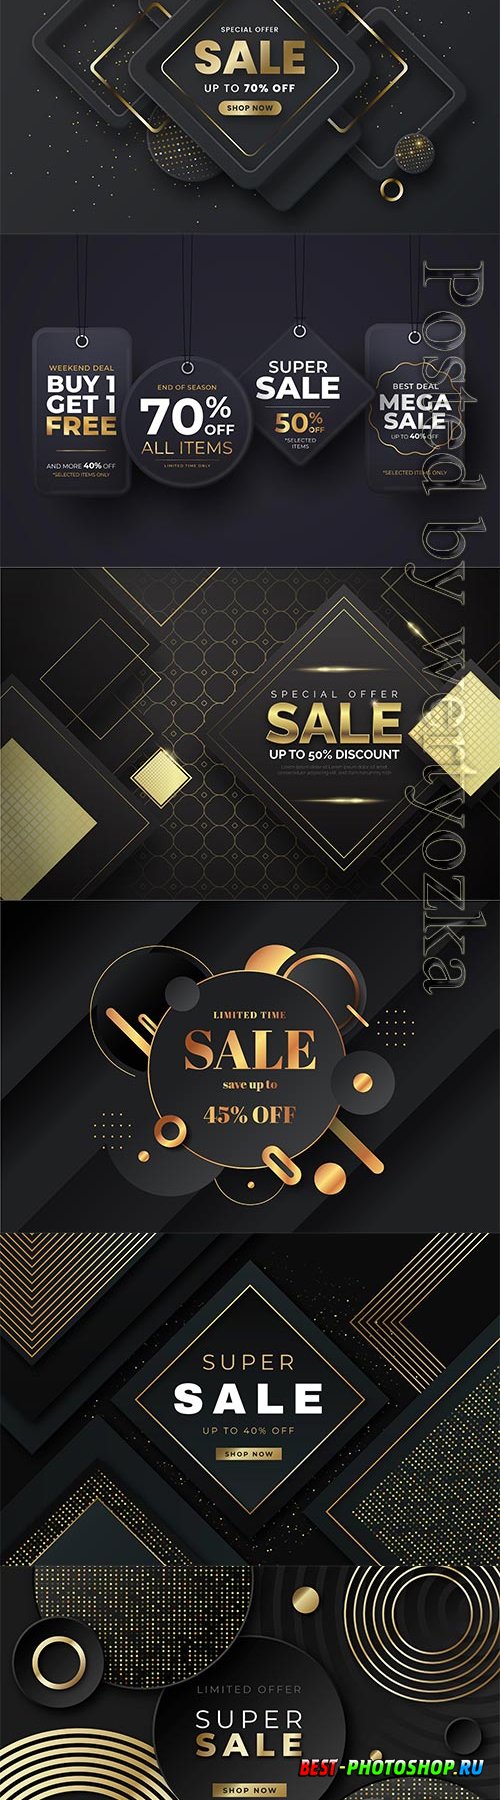 Luxury sale wallpaper with golden vector elements